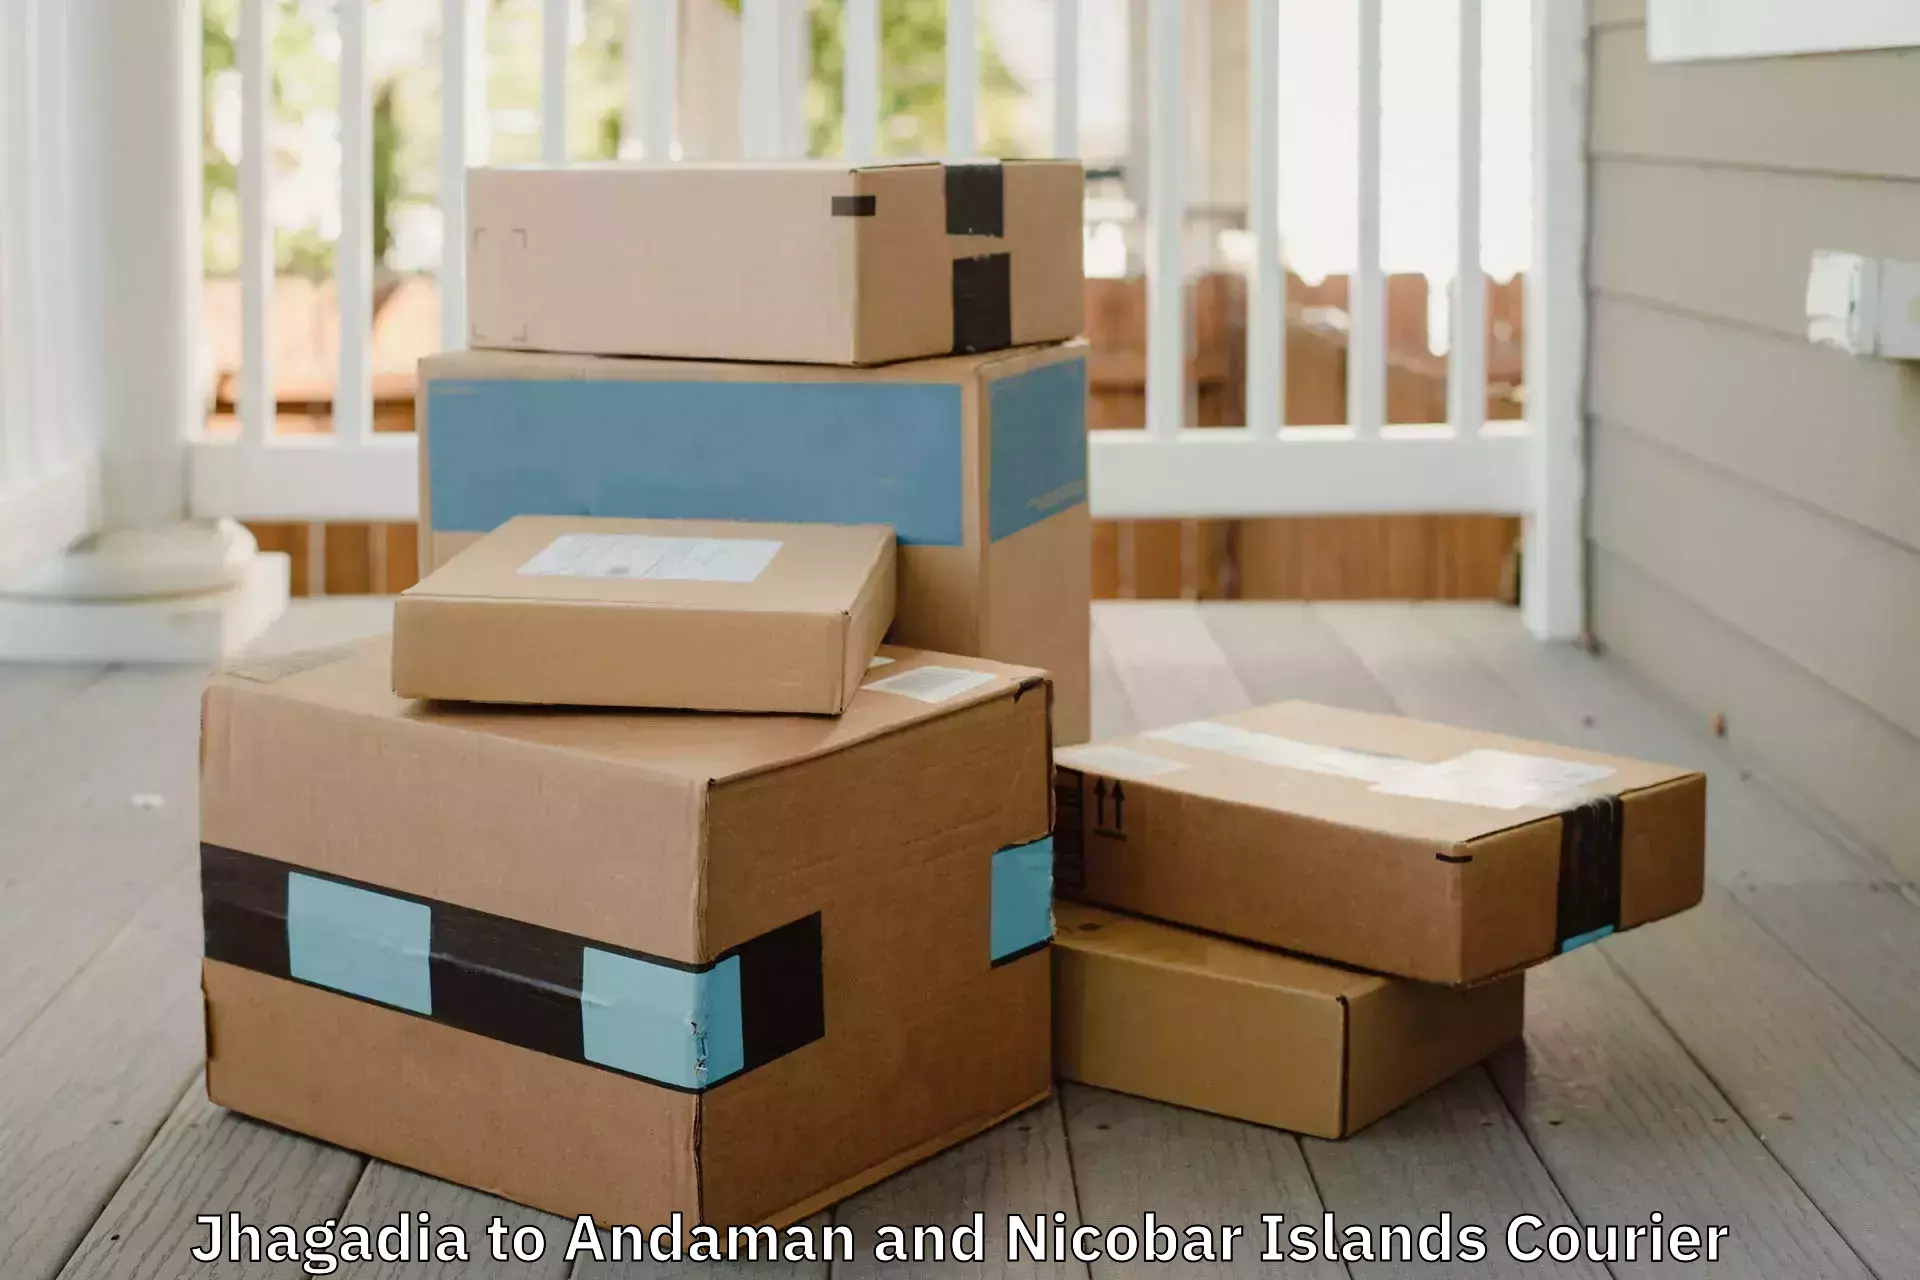 Furniture transport and logistics Jhagadia to Andaman and Nicobar Islands